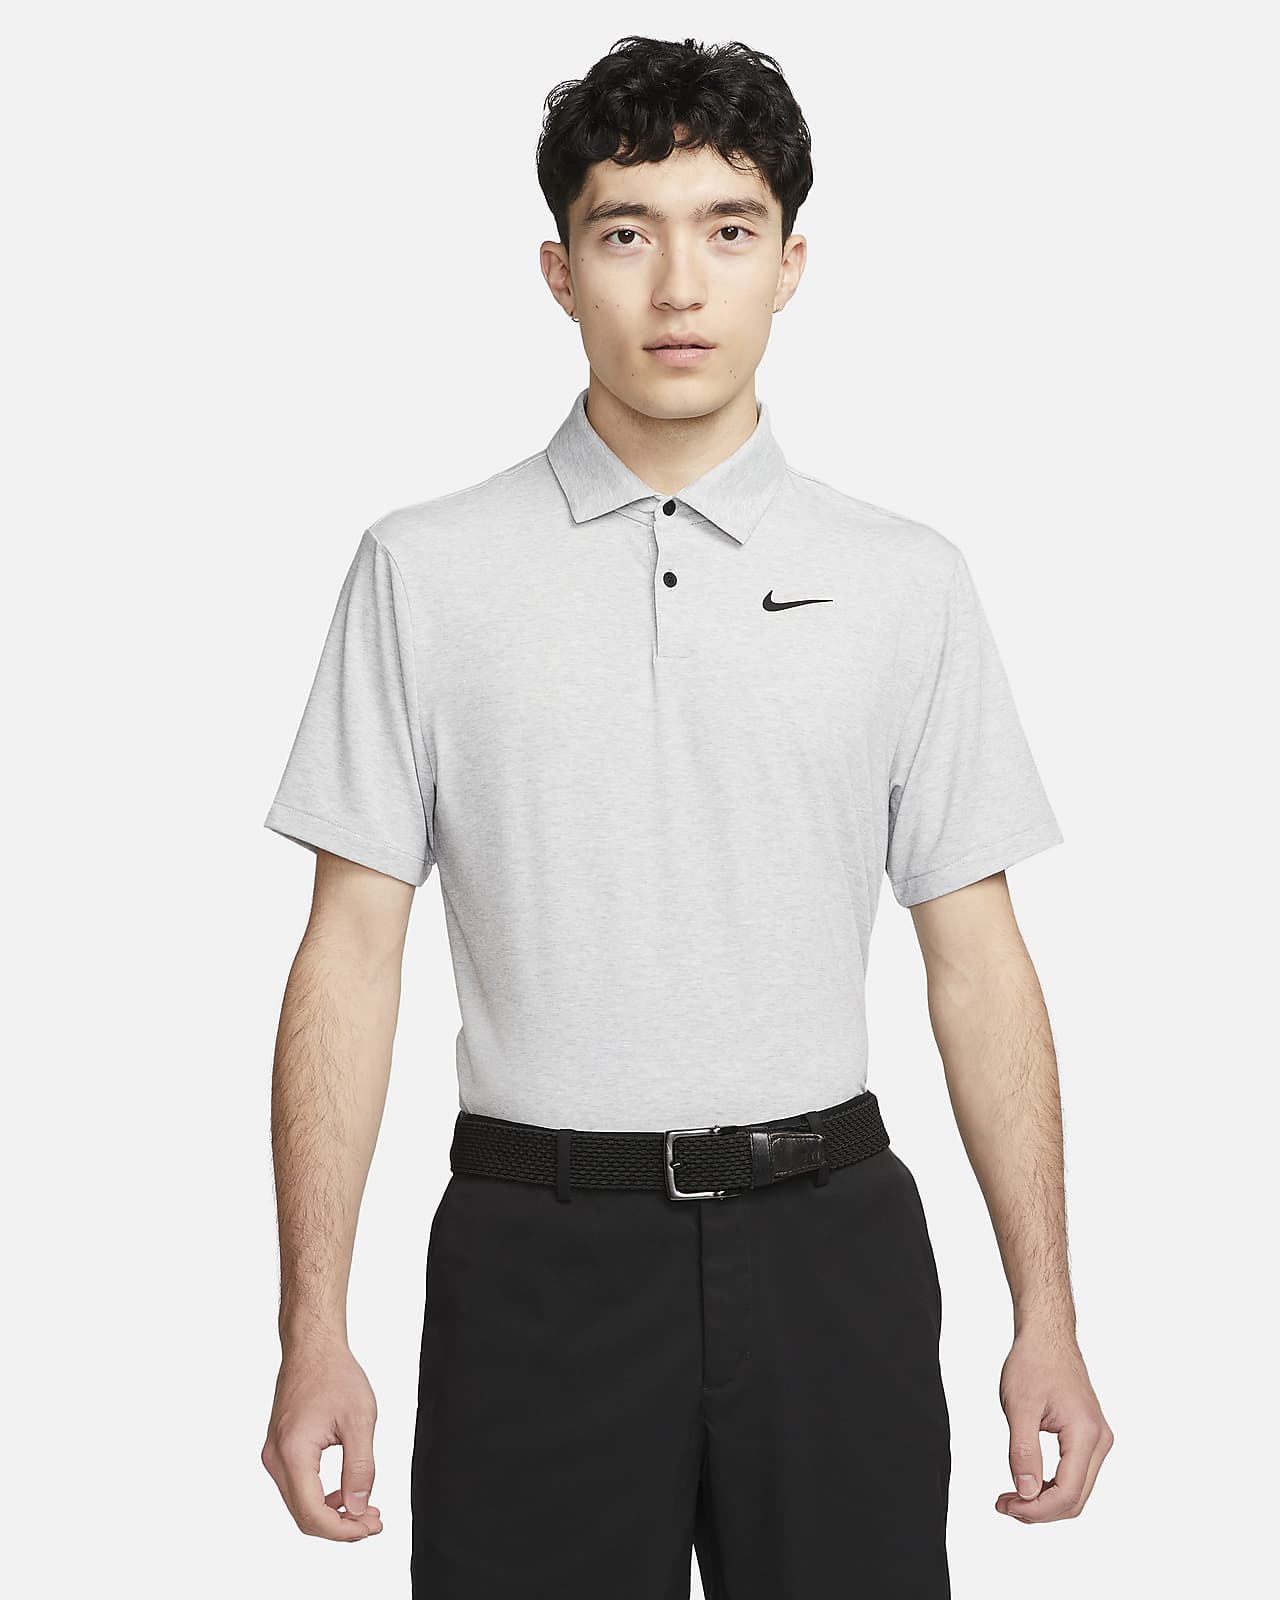 เสื้อโปโลกอล์ฟผู้ชาย Nike Dri-FIT Tour